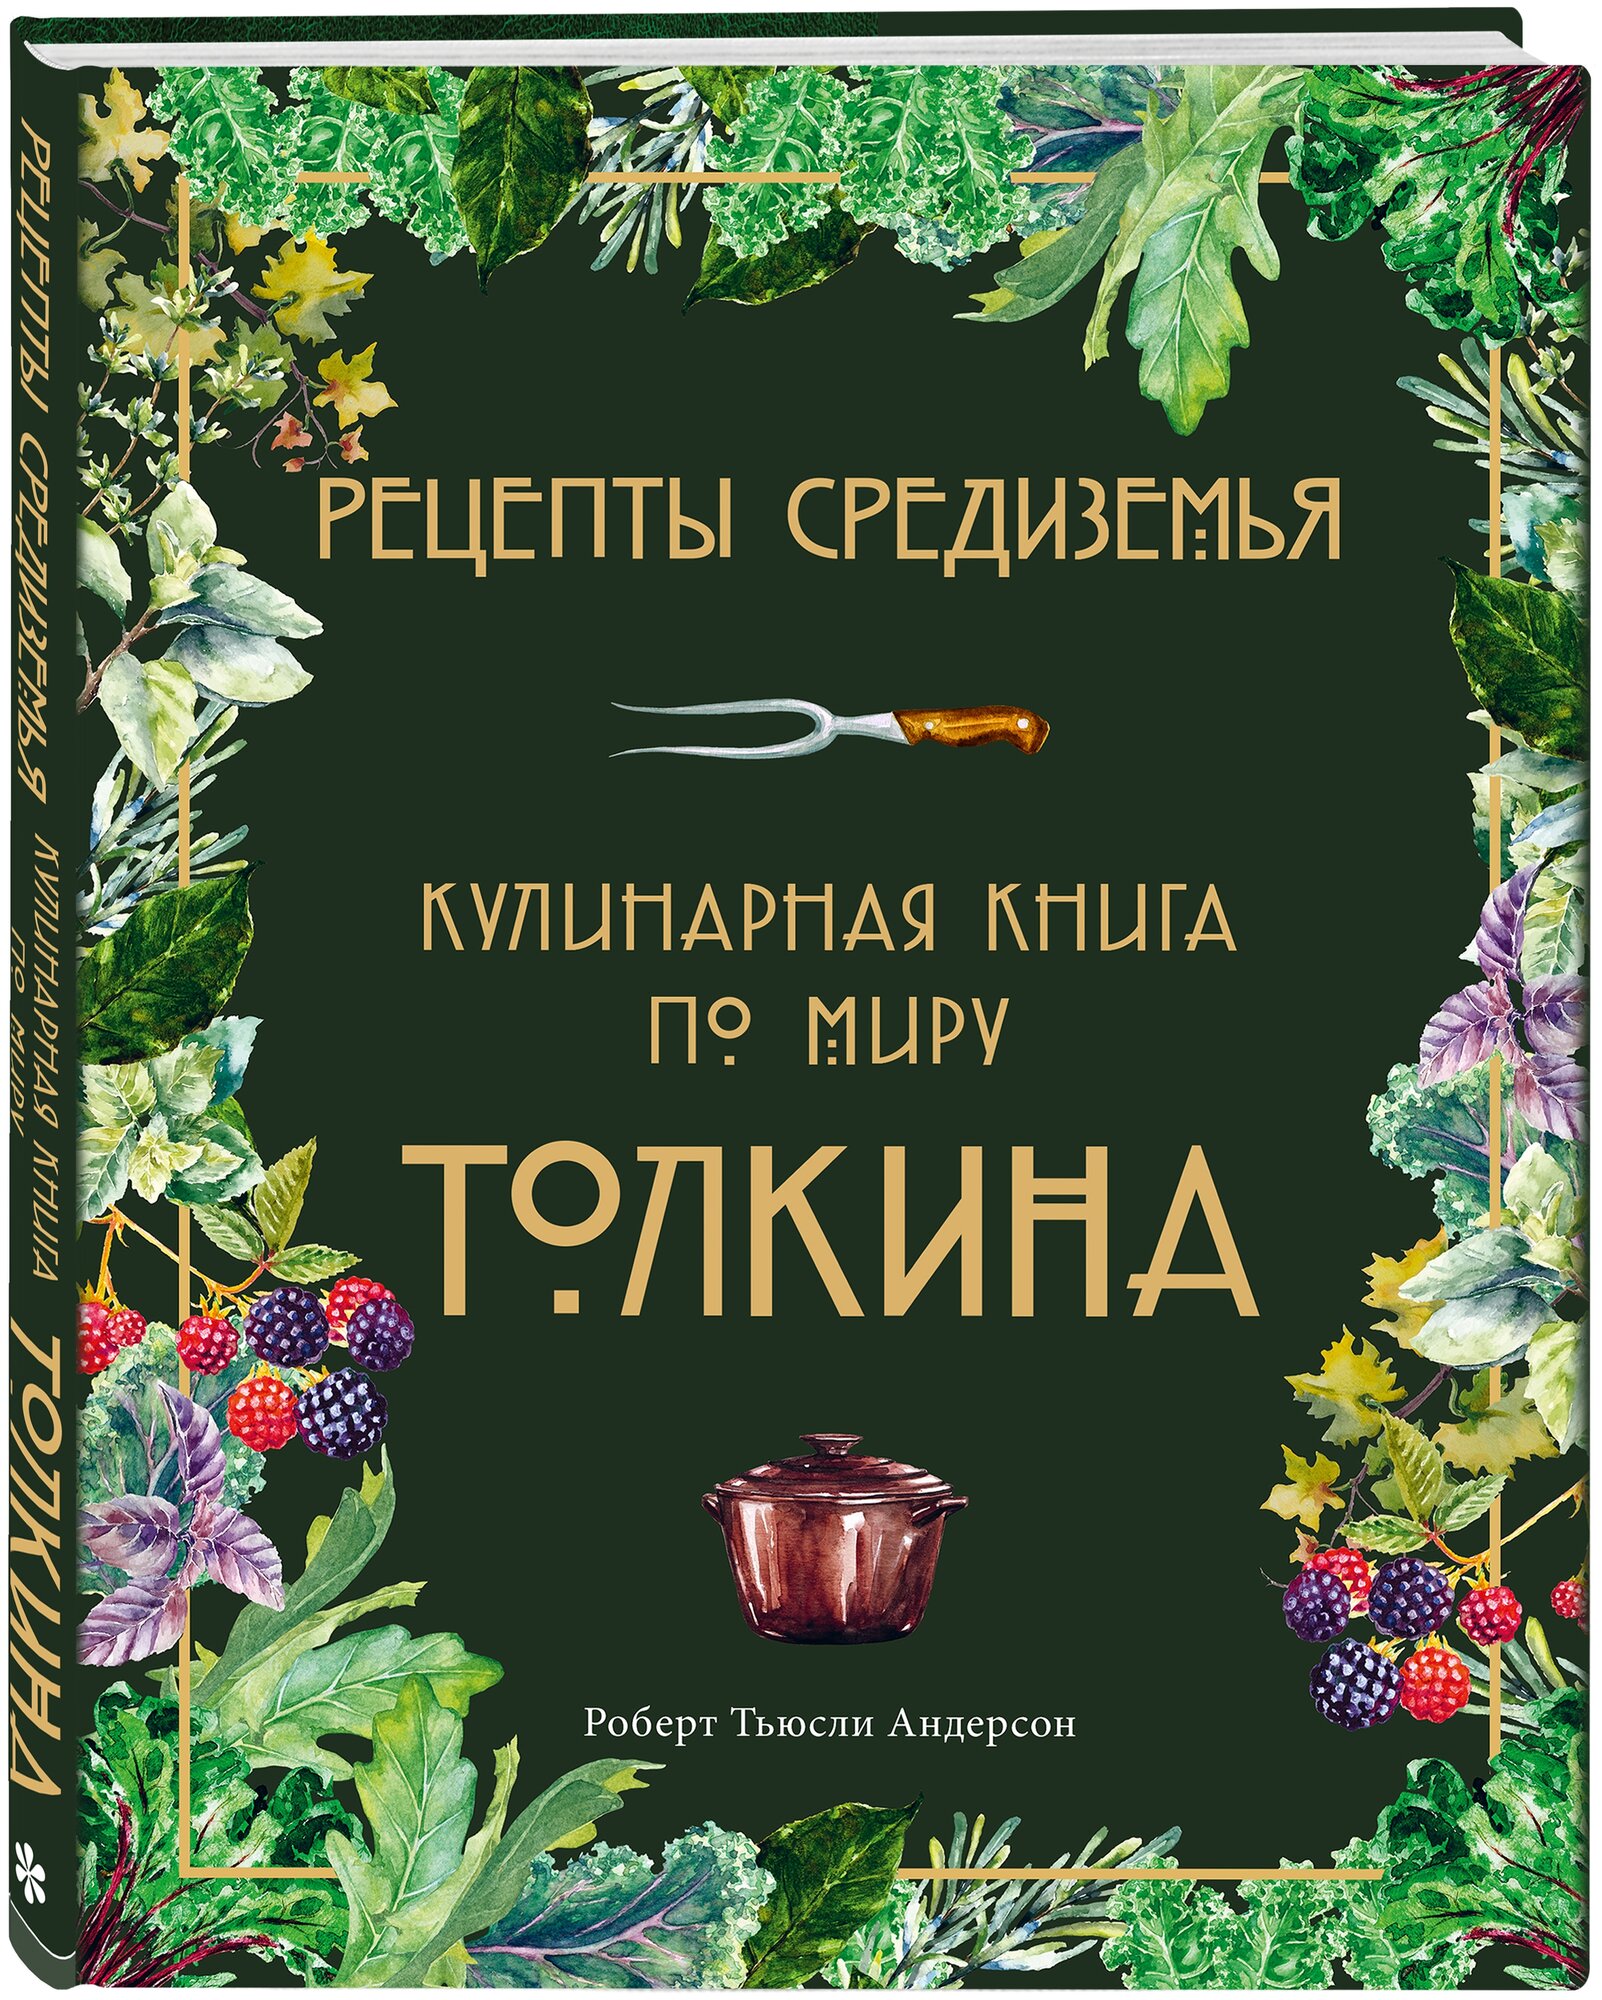 Рецепты Средиземья Кулинарная книга по миру Толкина Книга Андерсон Роберт 16+